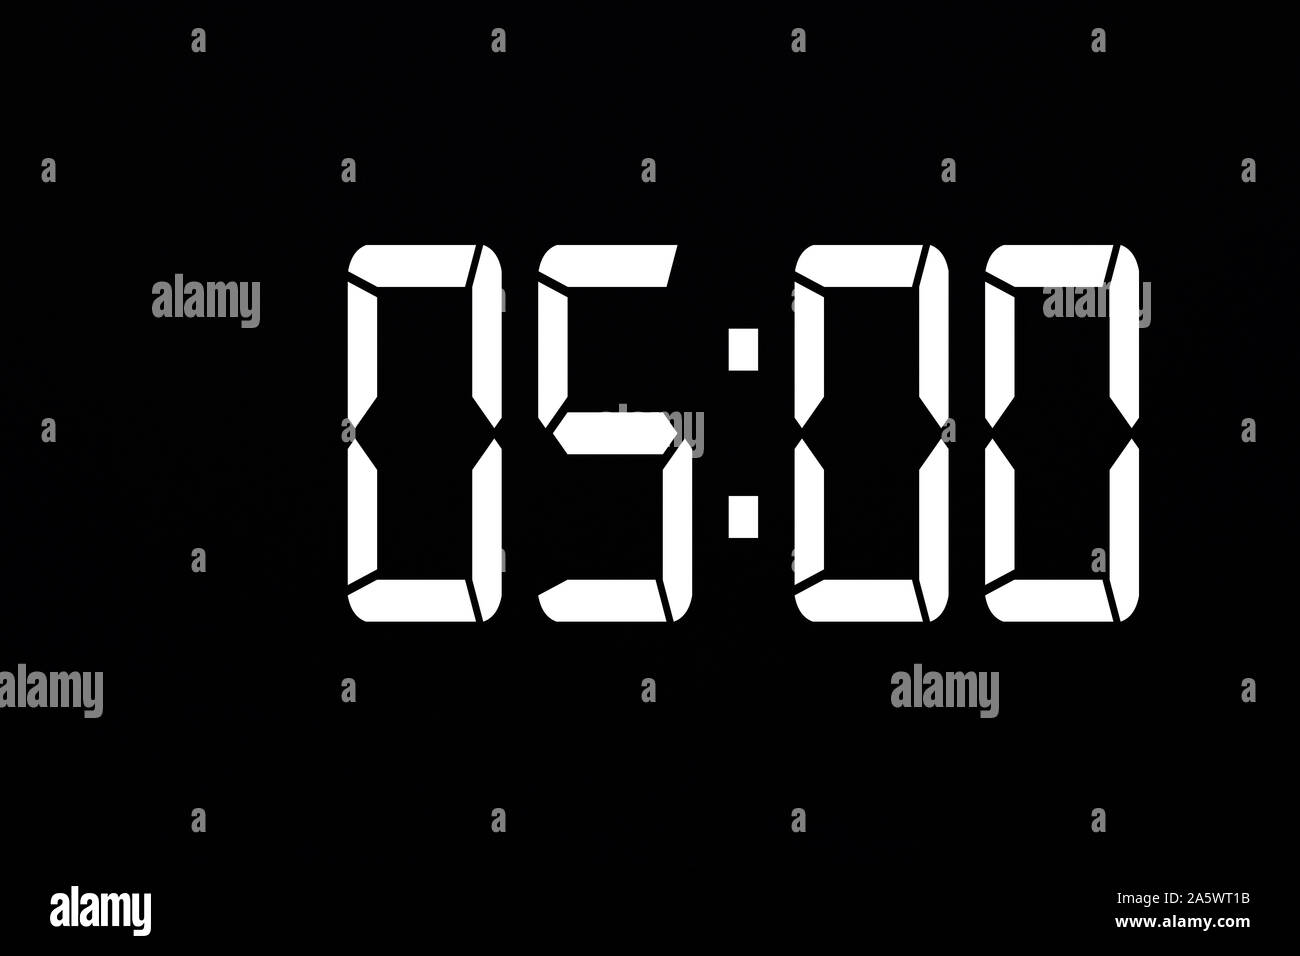 Mostrar el tiempo 05:00 reloj digital con LED blanca sobre fondo negro aislado Foto de stock